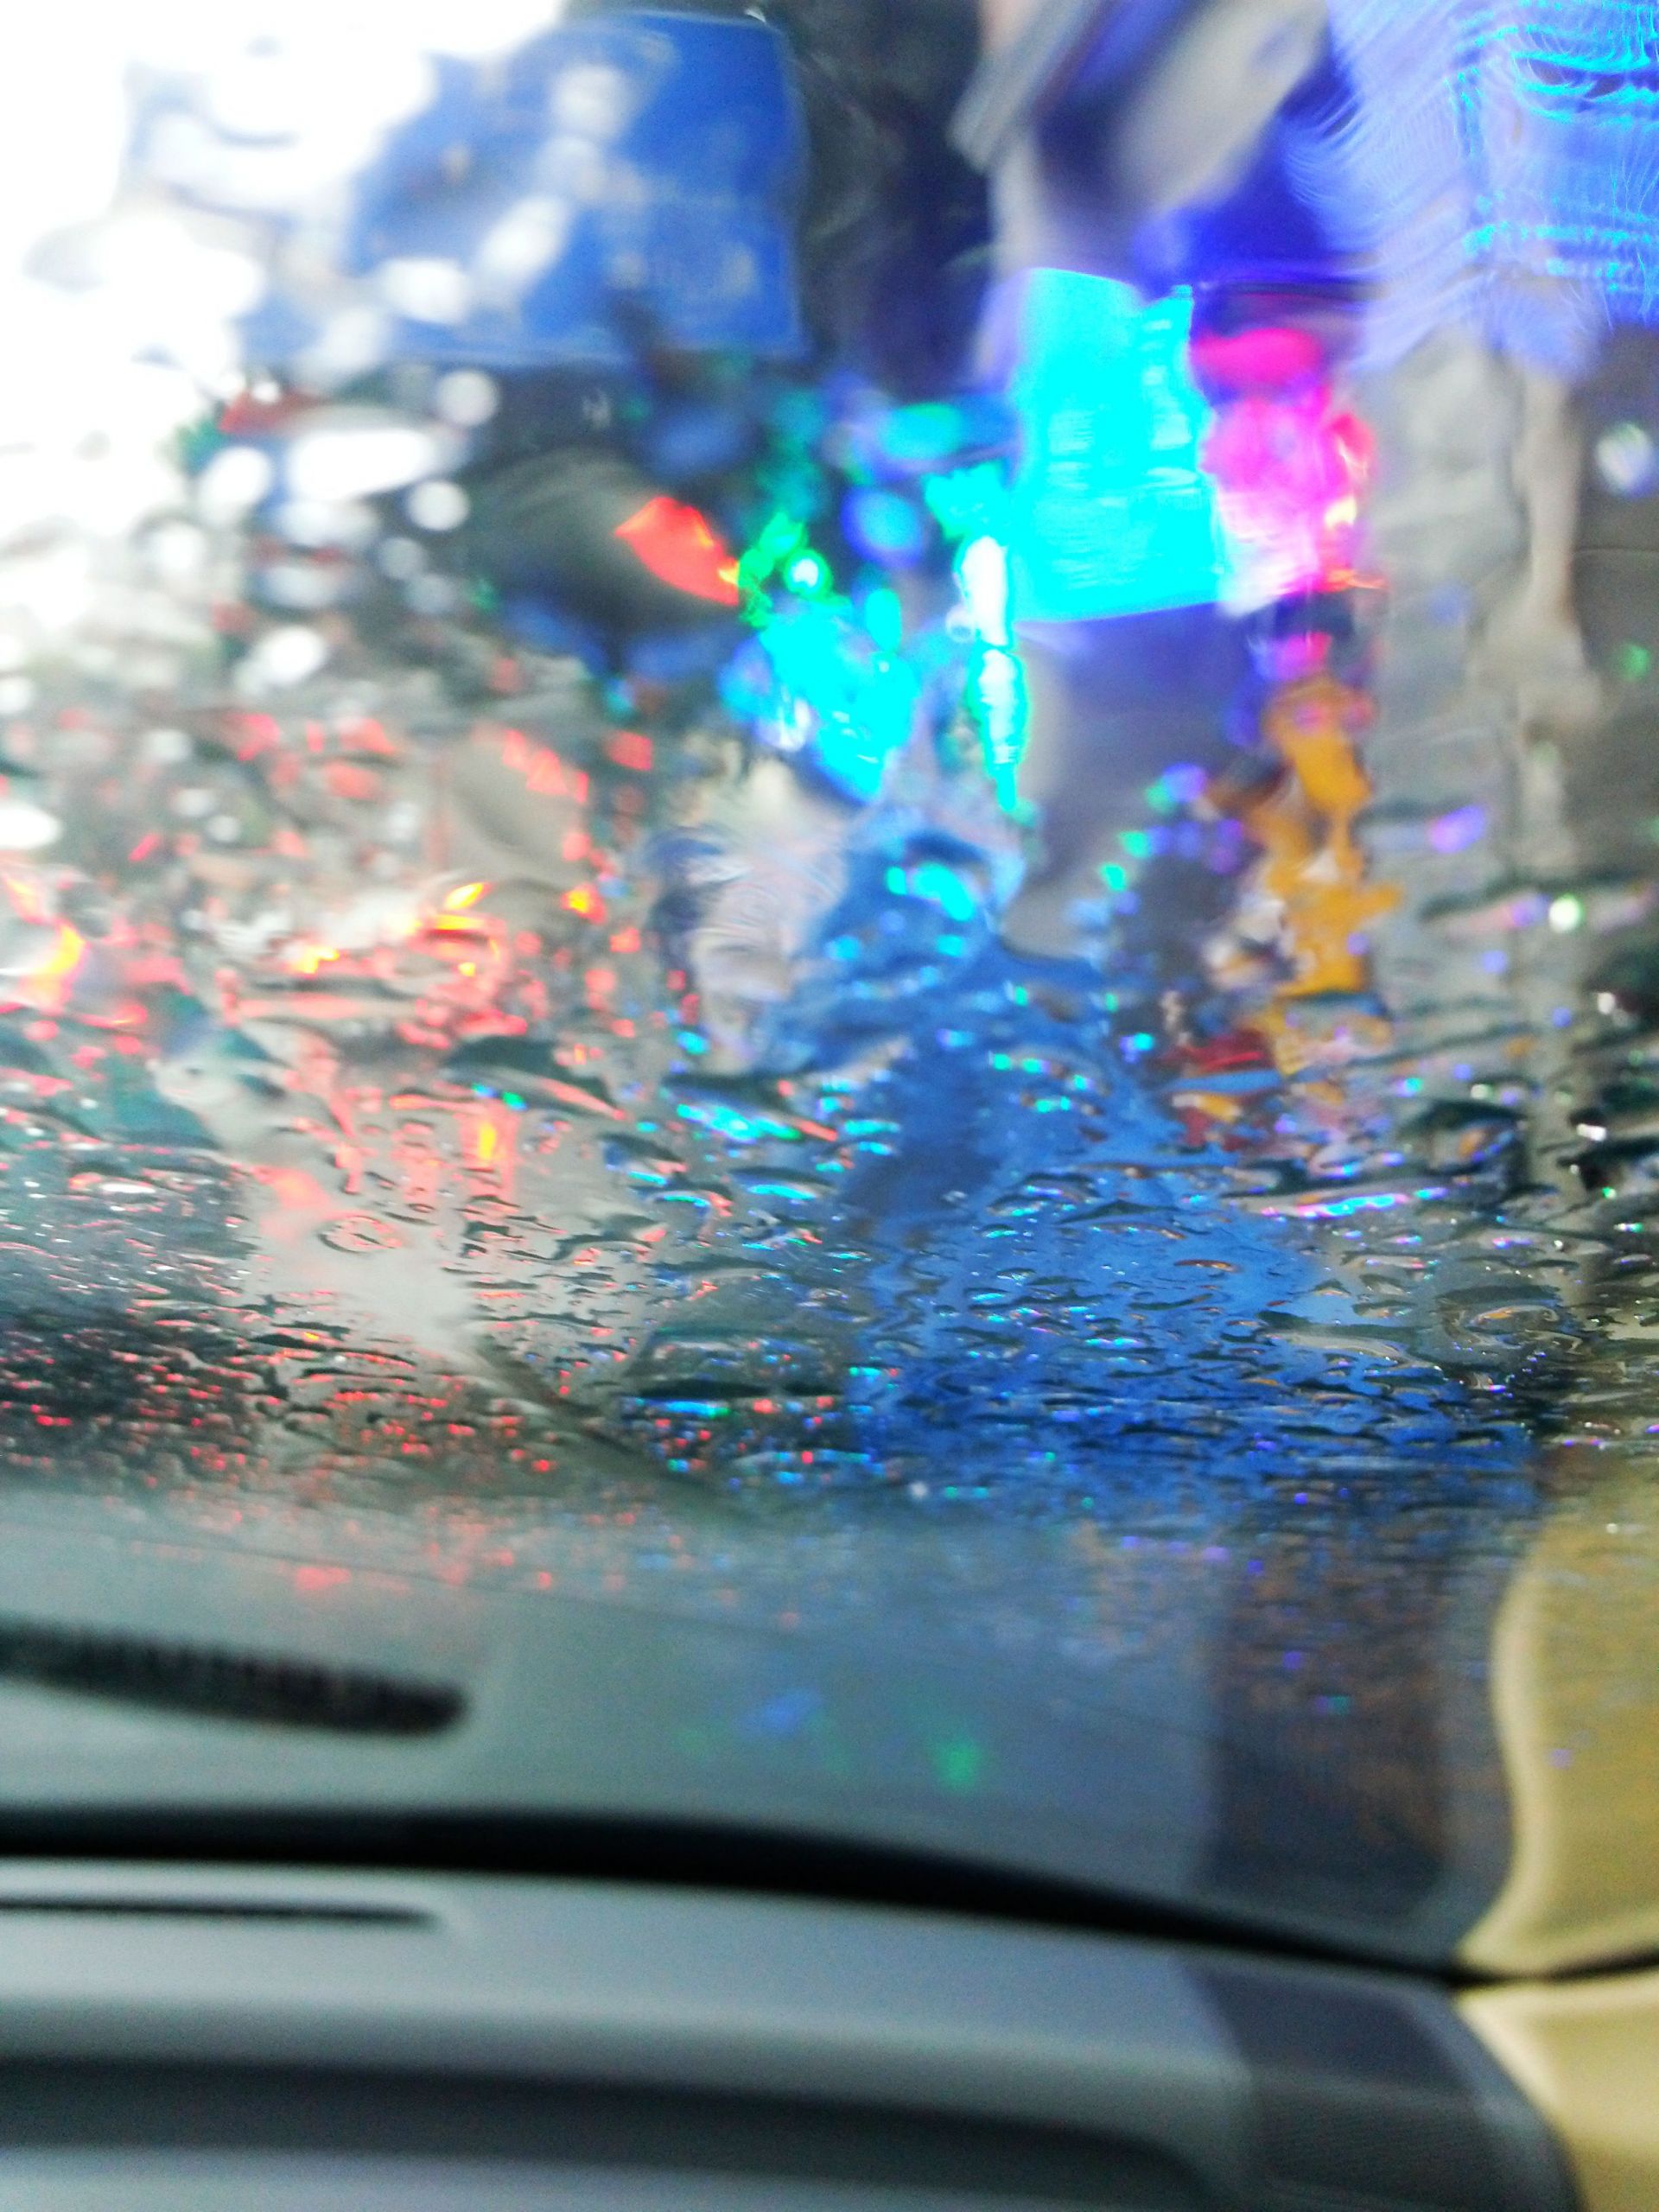 【11月27日】下雨天,车窗上的雨珠与外面世界相溶.